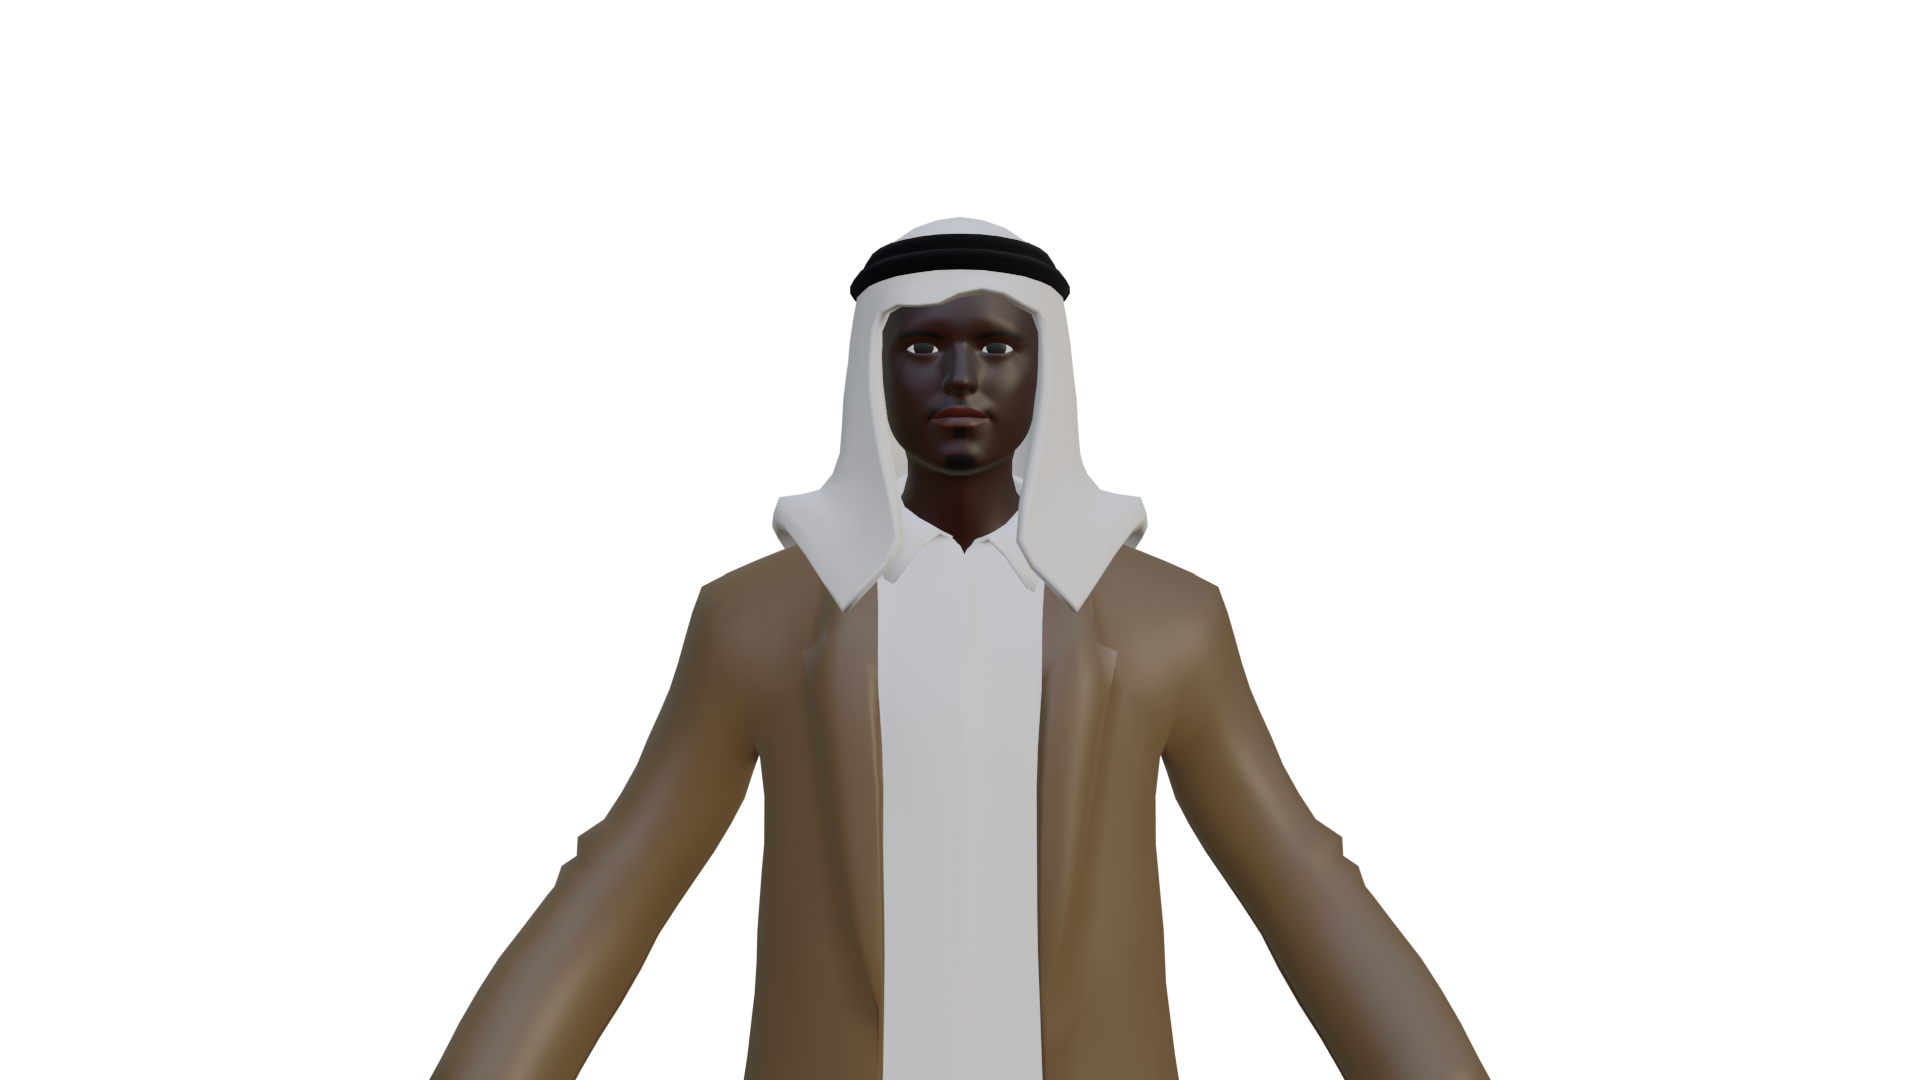 Arab Man 2 preview image 1